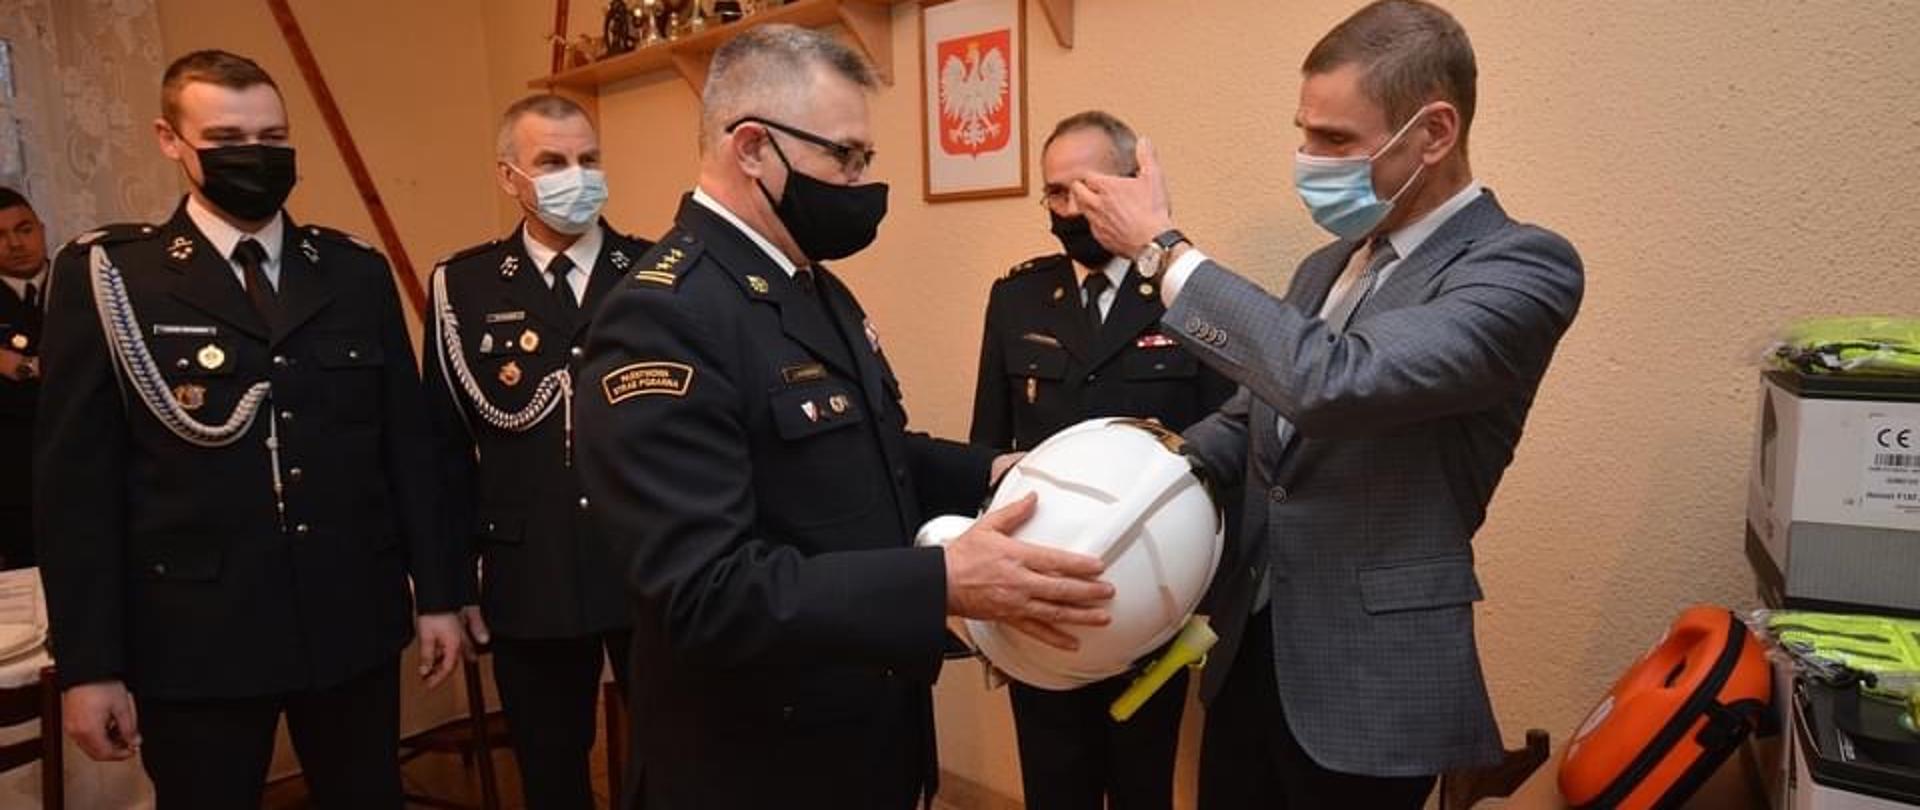 Strażacy wraz z komendantami i burmistrzem. Po prawej stronie przekazywany sprzęt. Burmistrz podaje Kujawsko-Pomorskiemu Komendantowi Państwowej Straży Pożarnej hełm koloru białego.